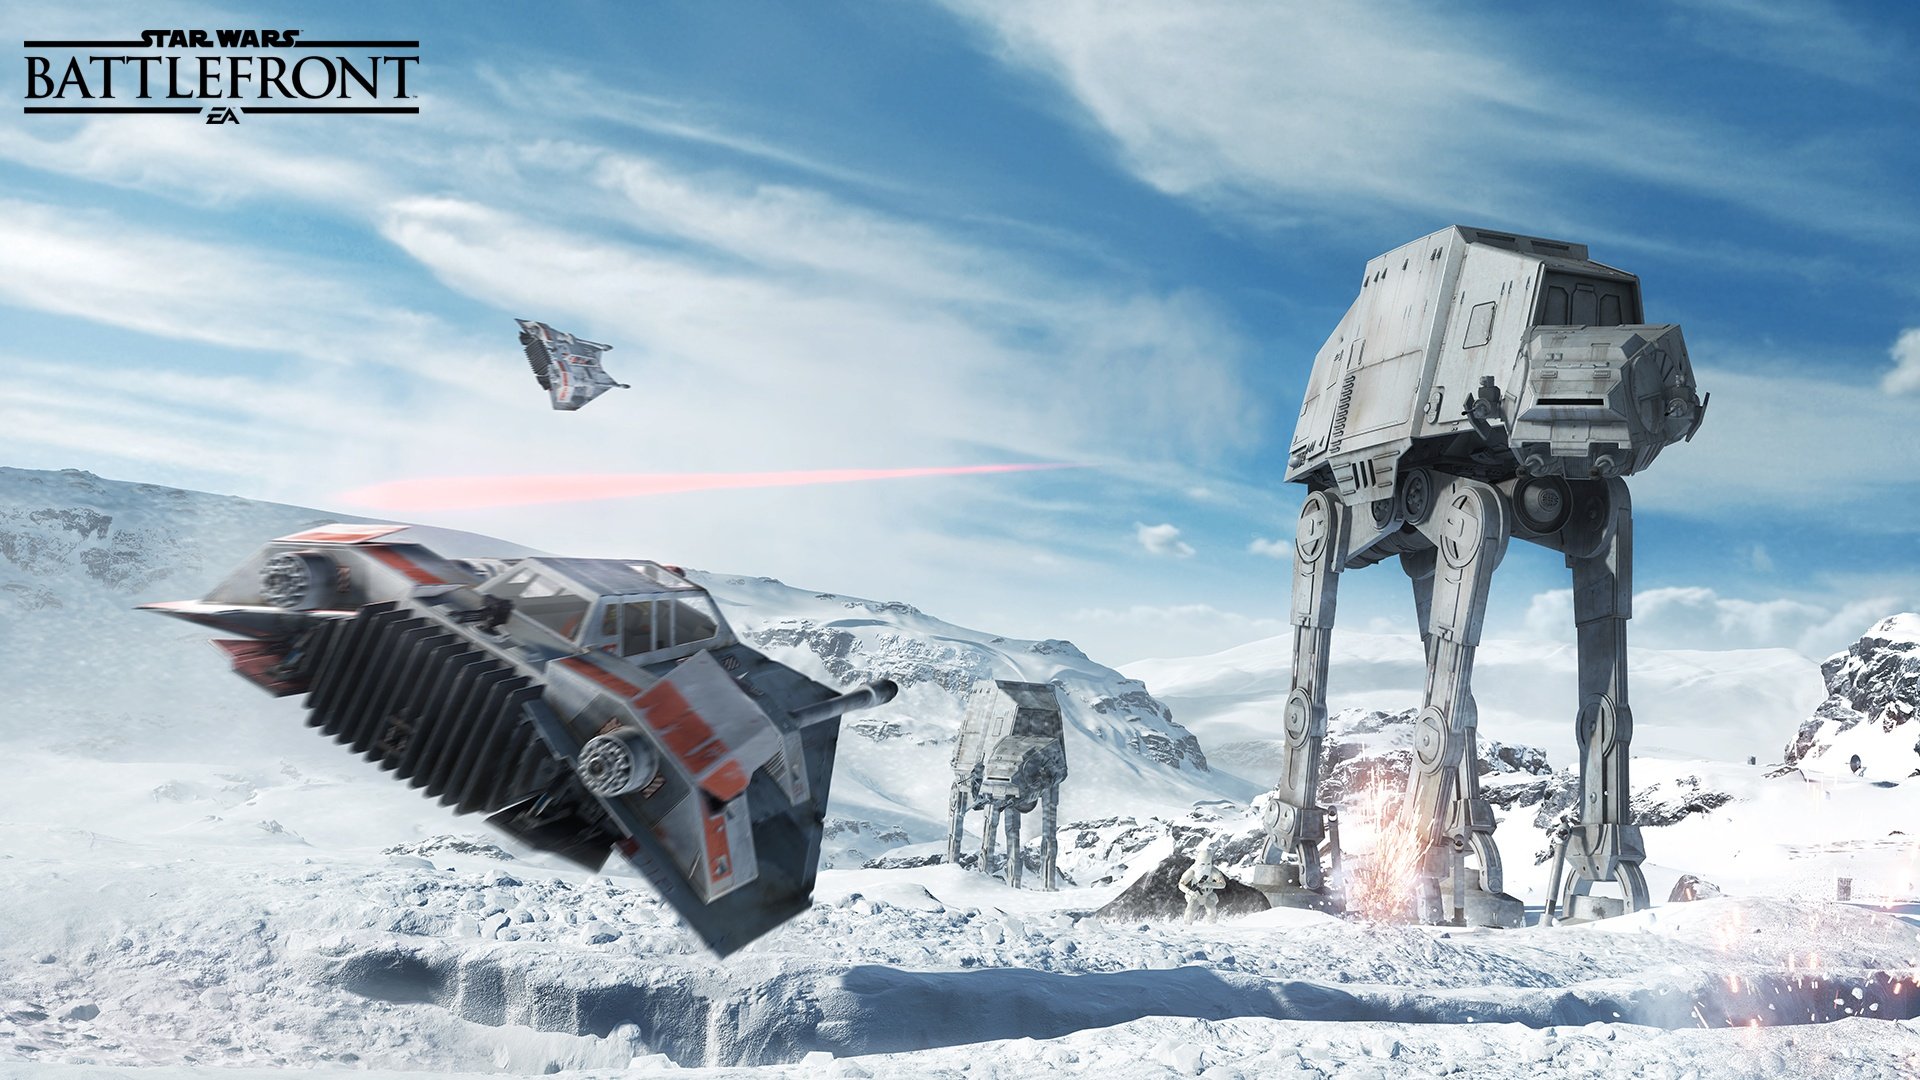 EA CFO Hints at Star Wars Battlefront Mobile Games